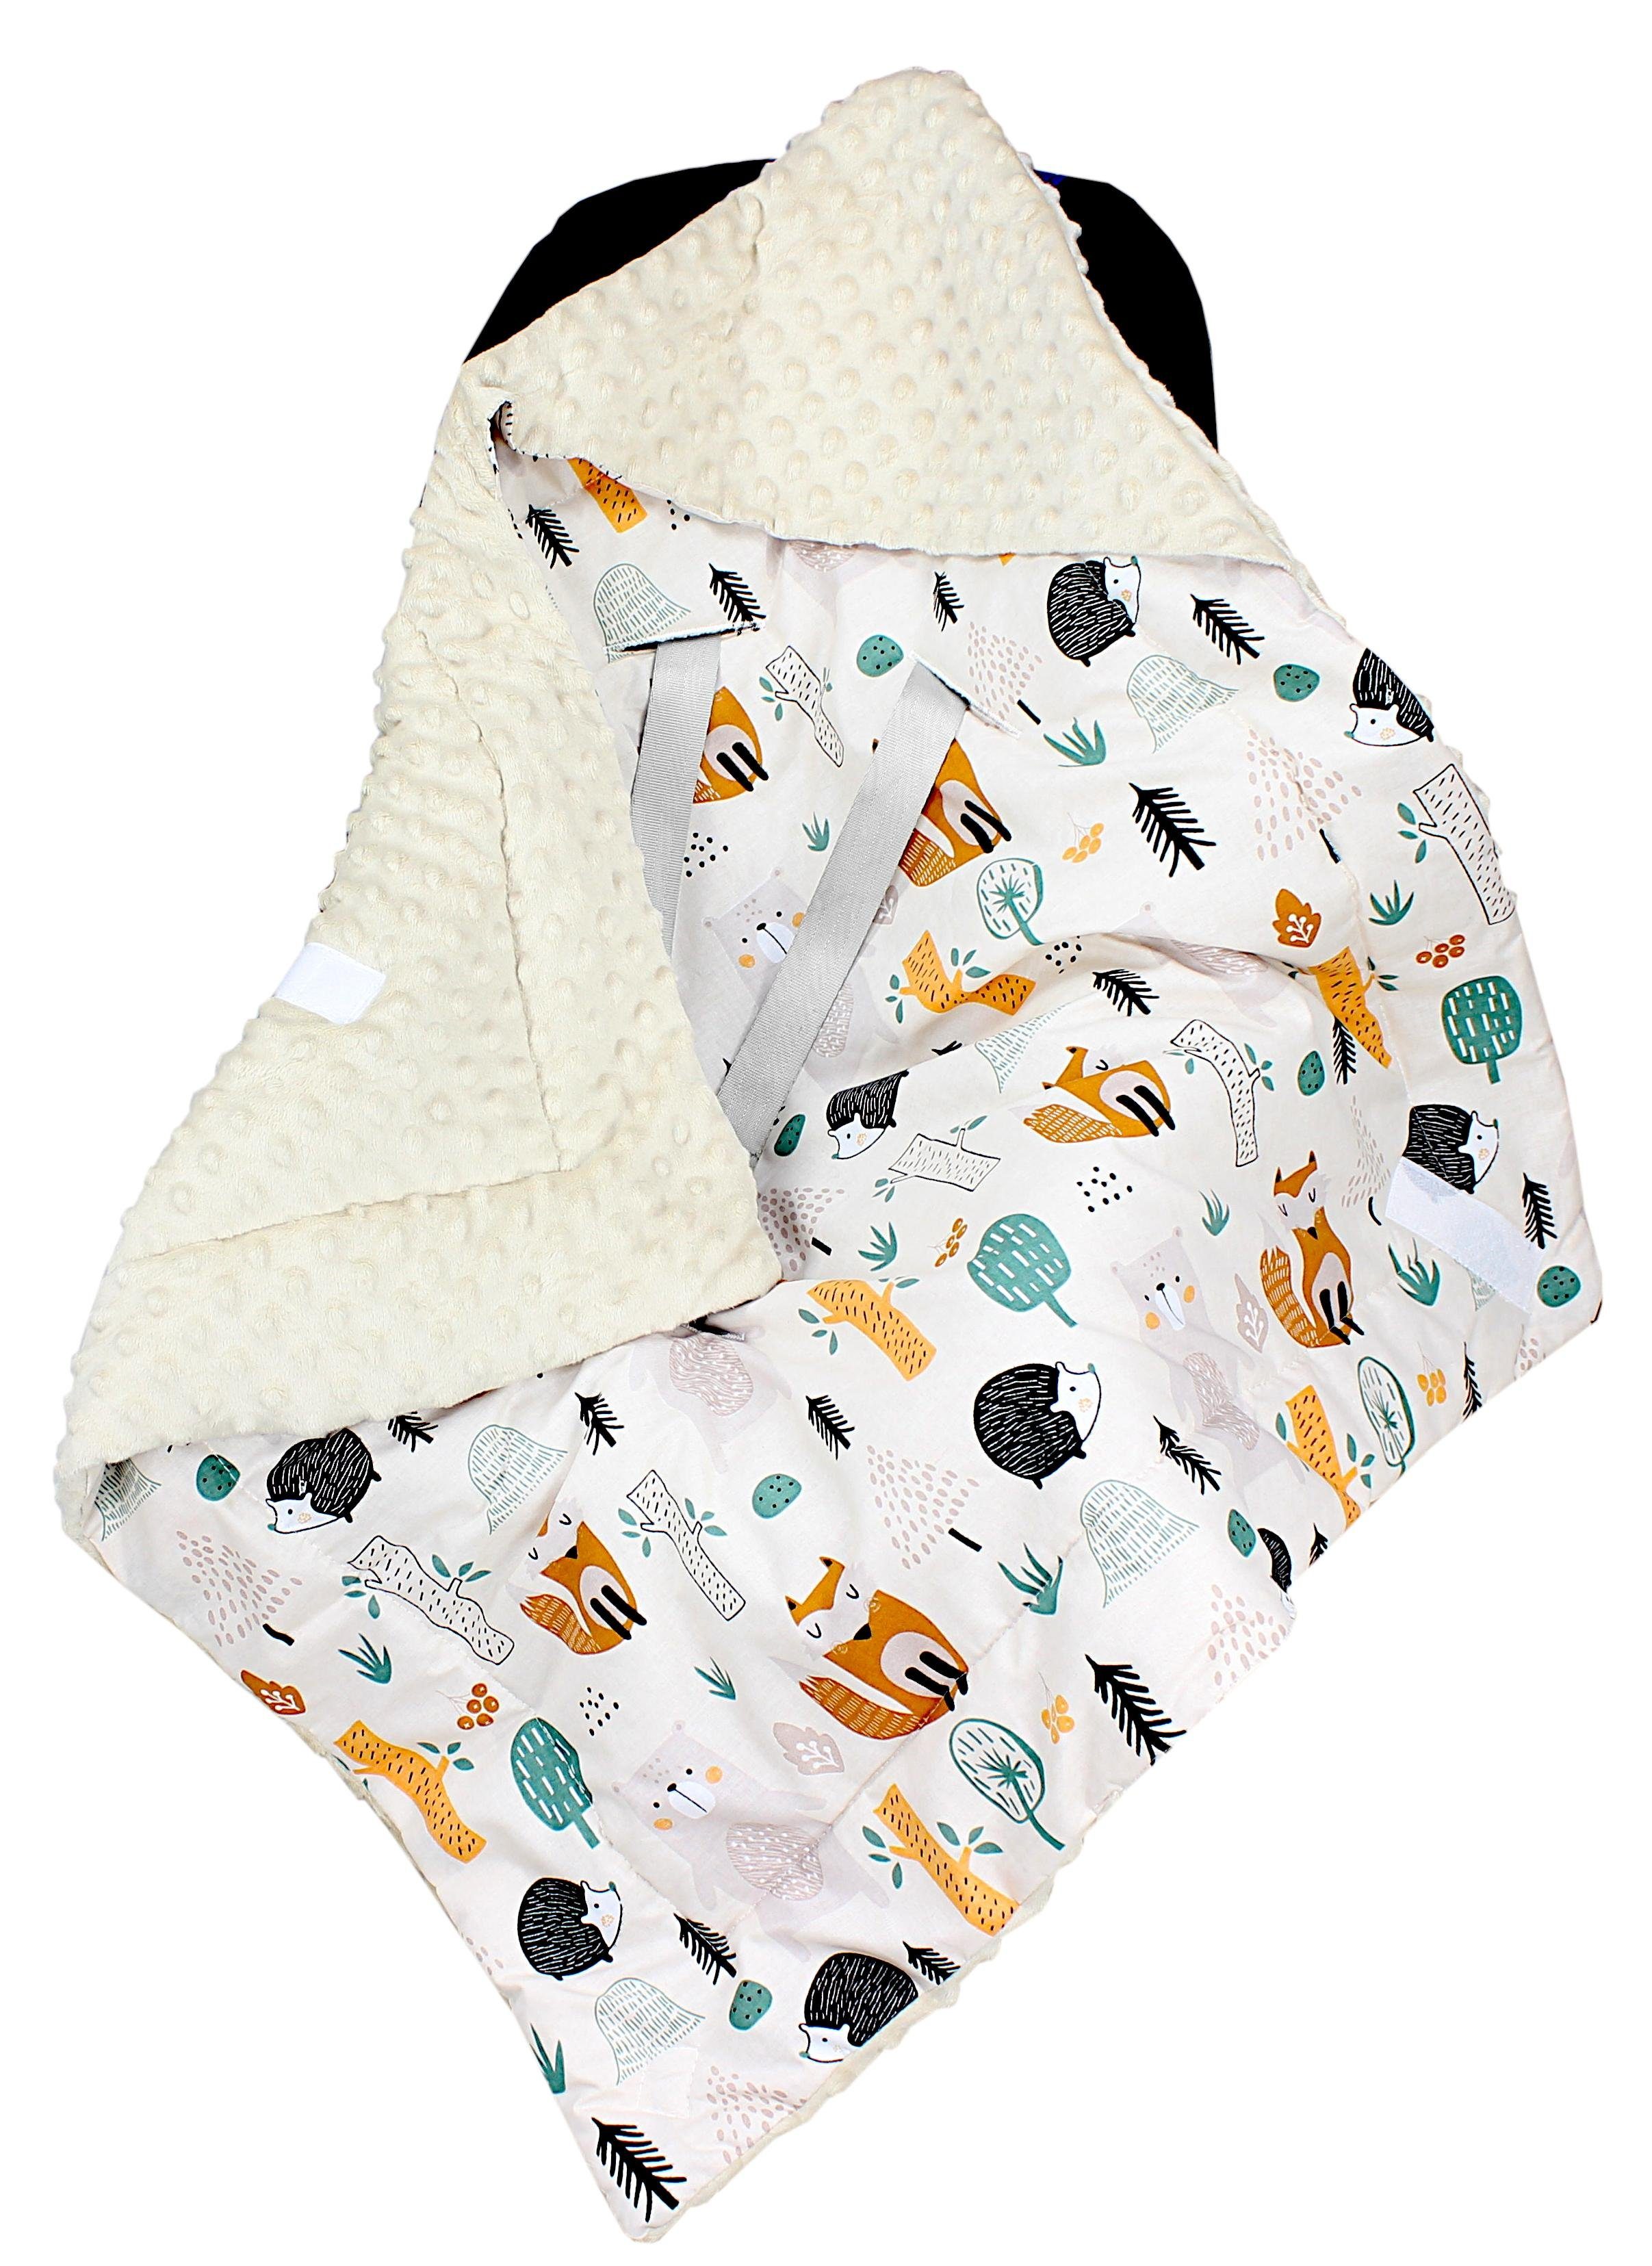 Einschlagdecke Baby Winter Einschlagdecke für Babyschale Wattiert Minky, TupTam